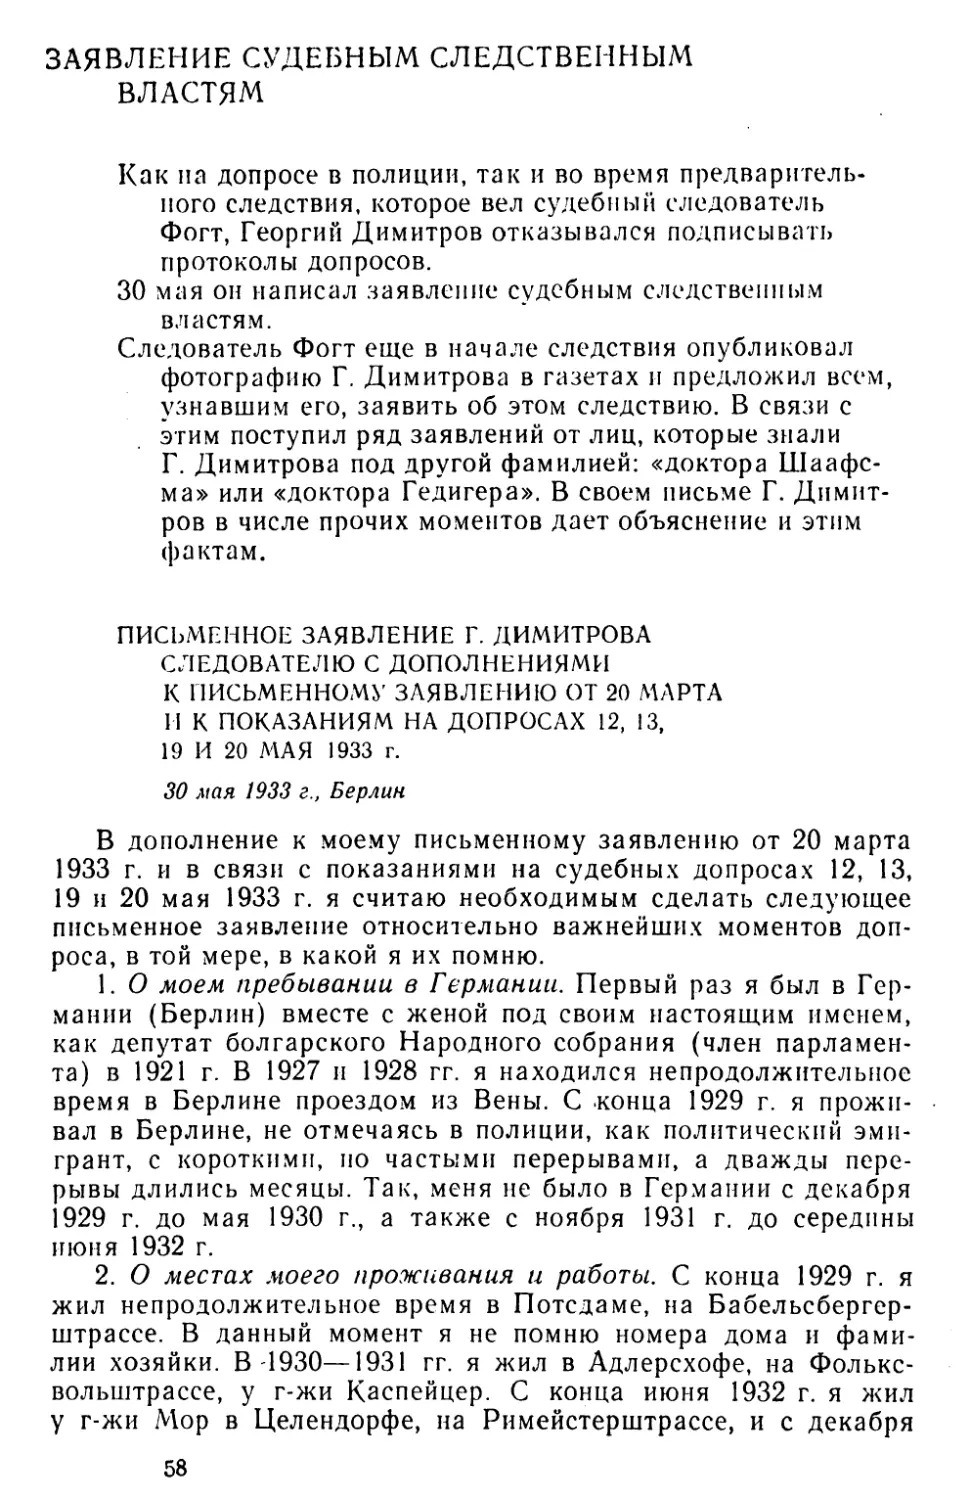 Заявление судебным следственным властям
Письменное заявление Г. Димитрова следователю с дополнениями к письменному заявлению от 20 марта и к показаниям на допросах 12, 13, 19 и 20 мая 1933 г. 30 мая 1933 г